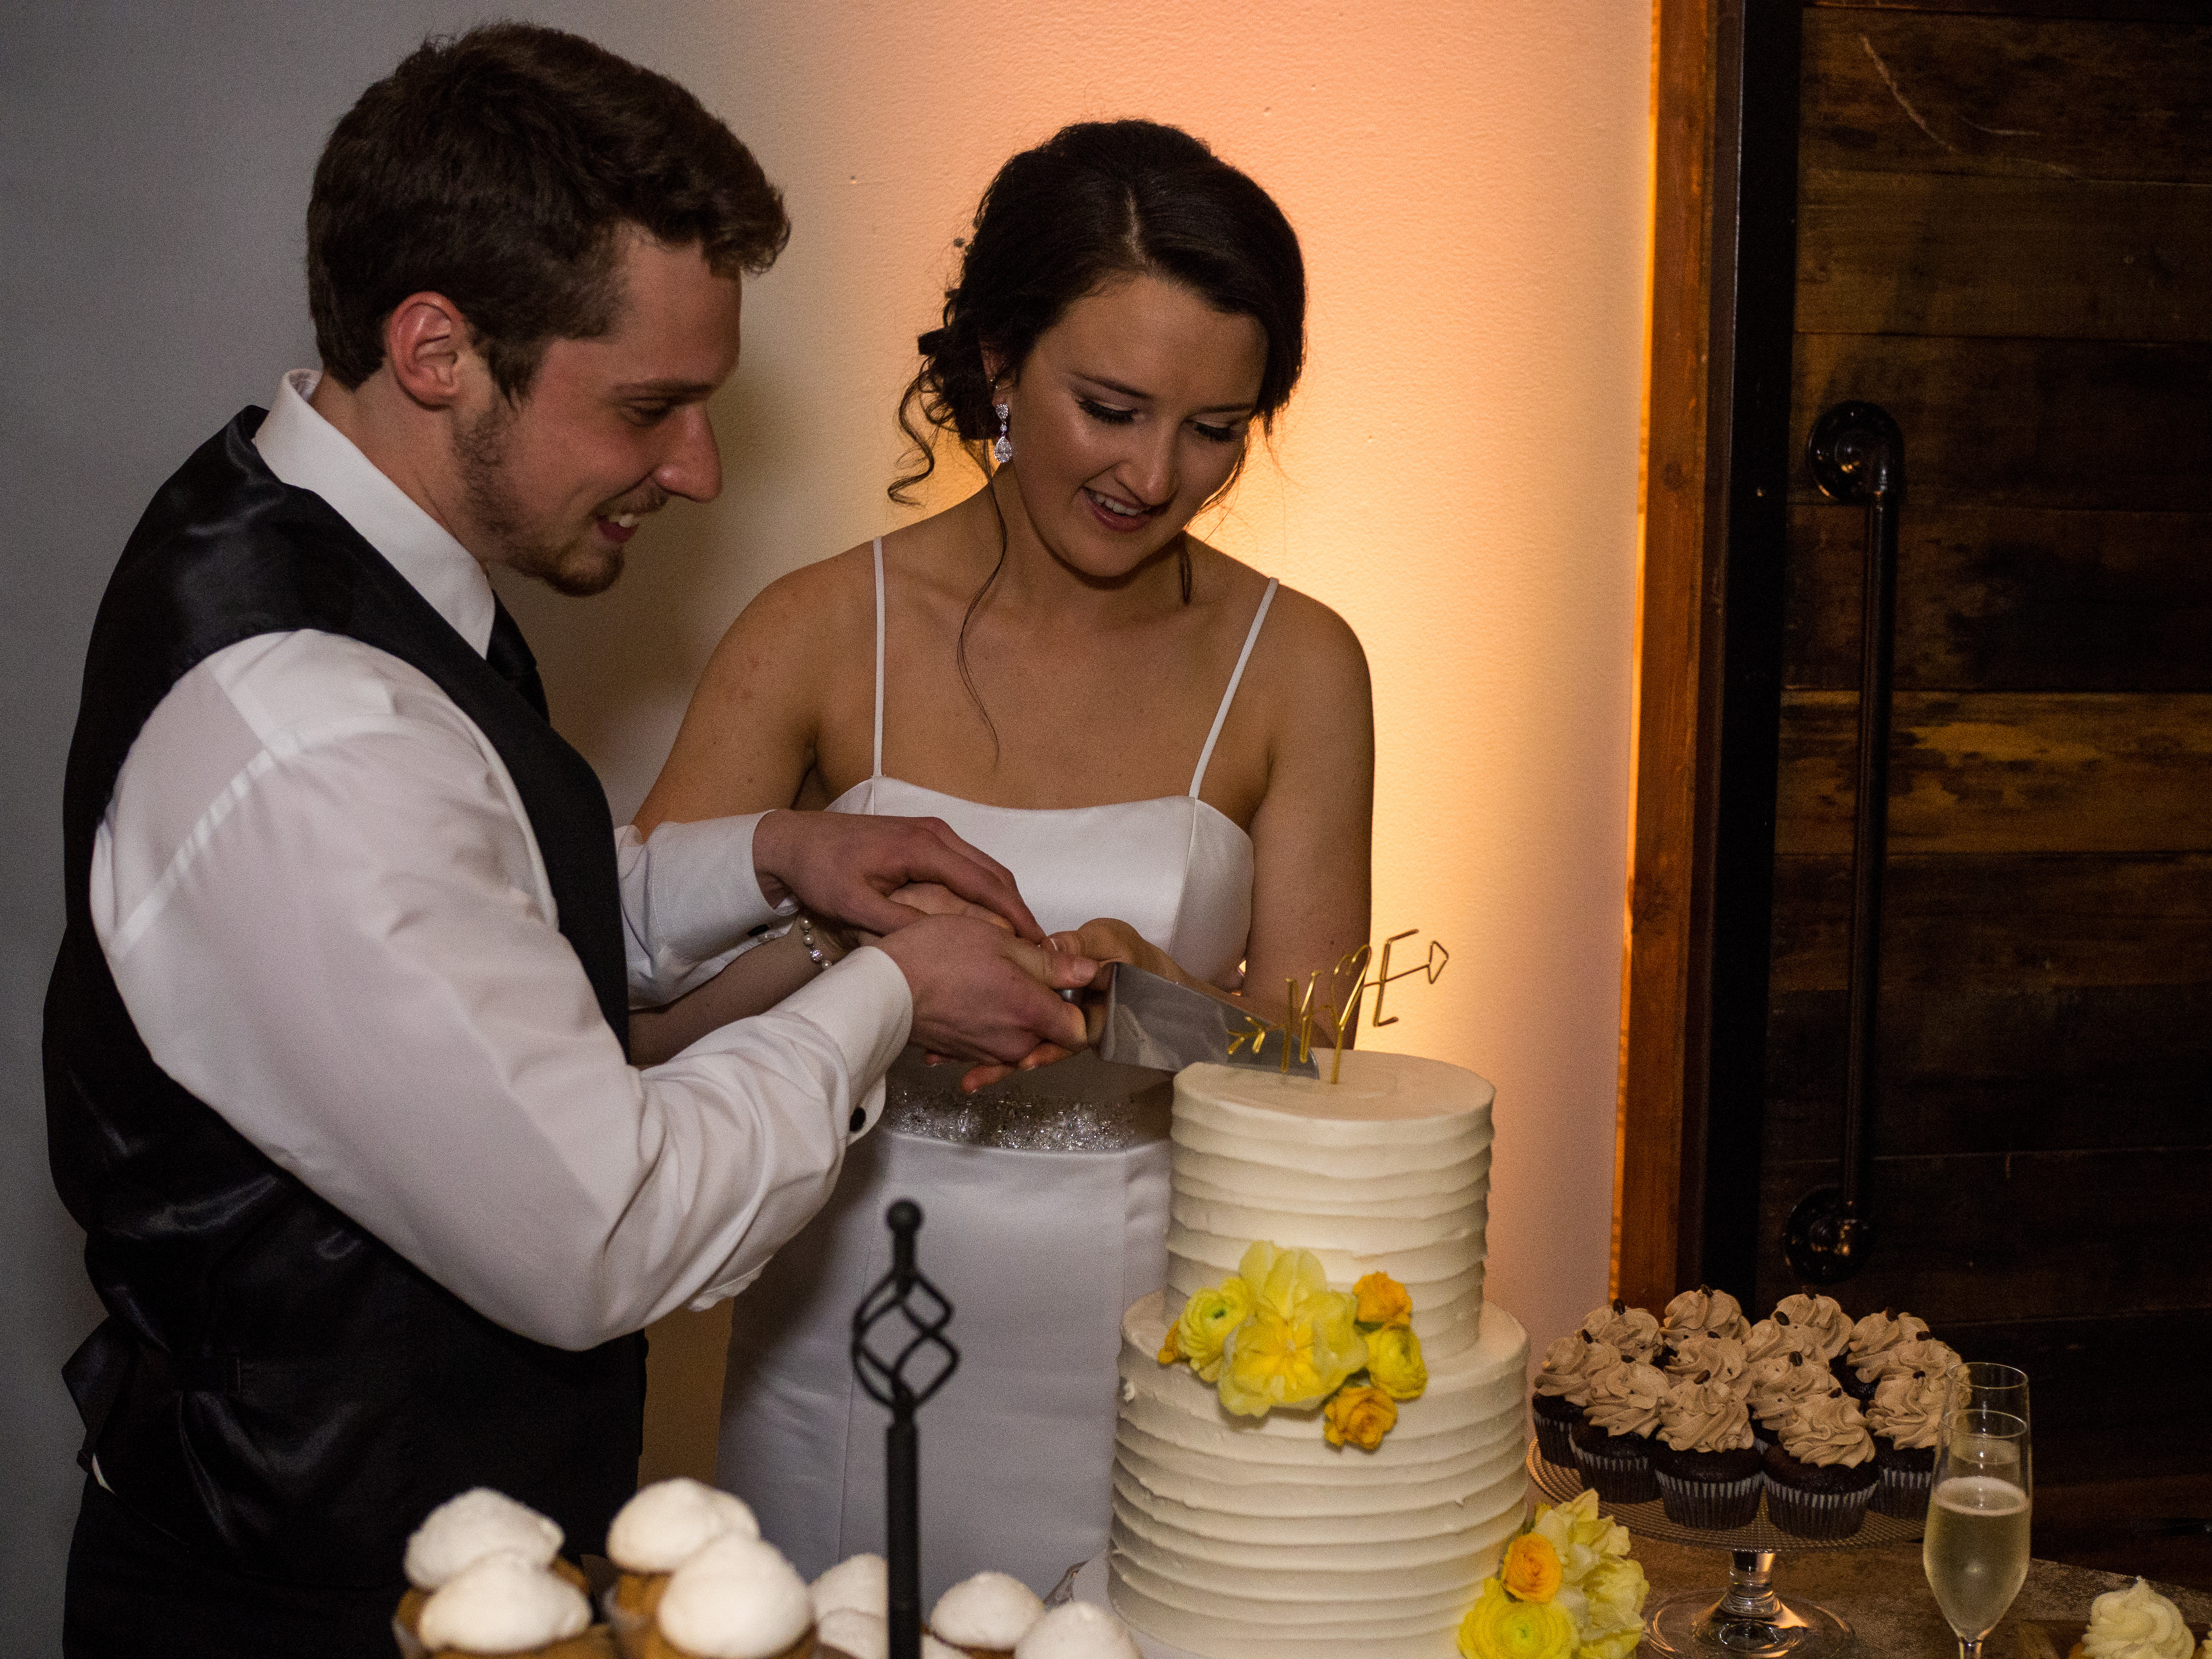 Cake cutting during wedding at 214 Martin Street